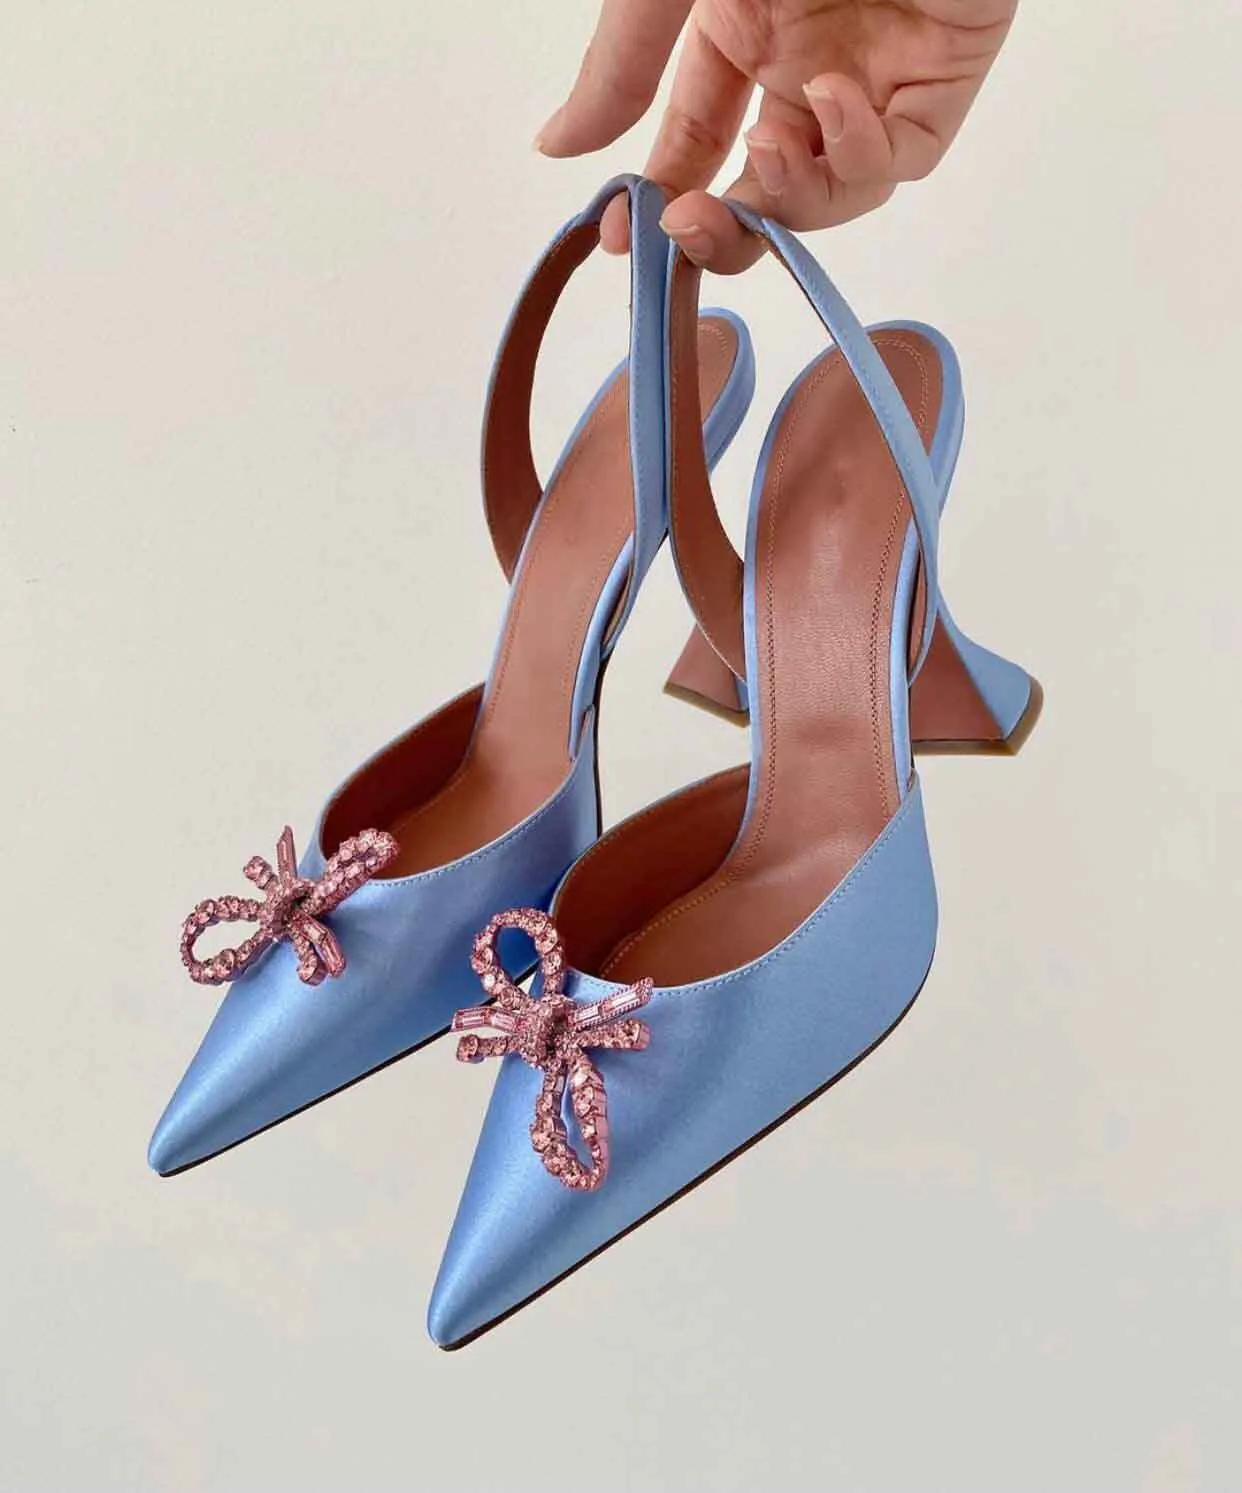 Femmes Amina Muaddi Sandales Designer talons hauts clair Rosie begum escarpins ornés de cristal Camelia Glass mules à talons en soie pour femmes chaussures de mariage de luxe